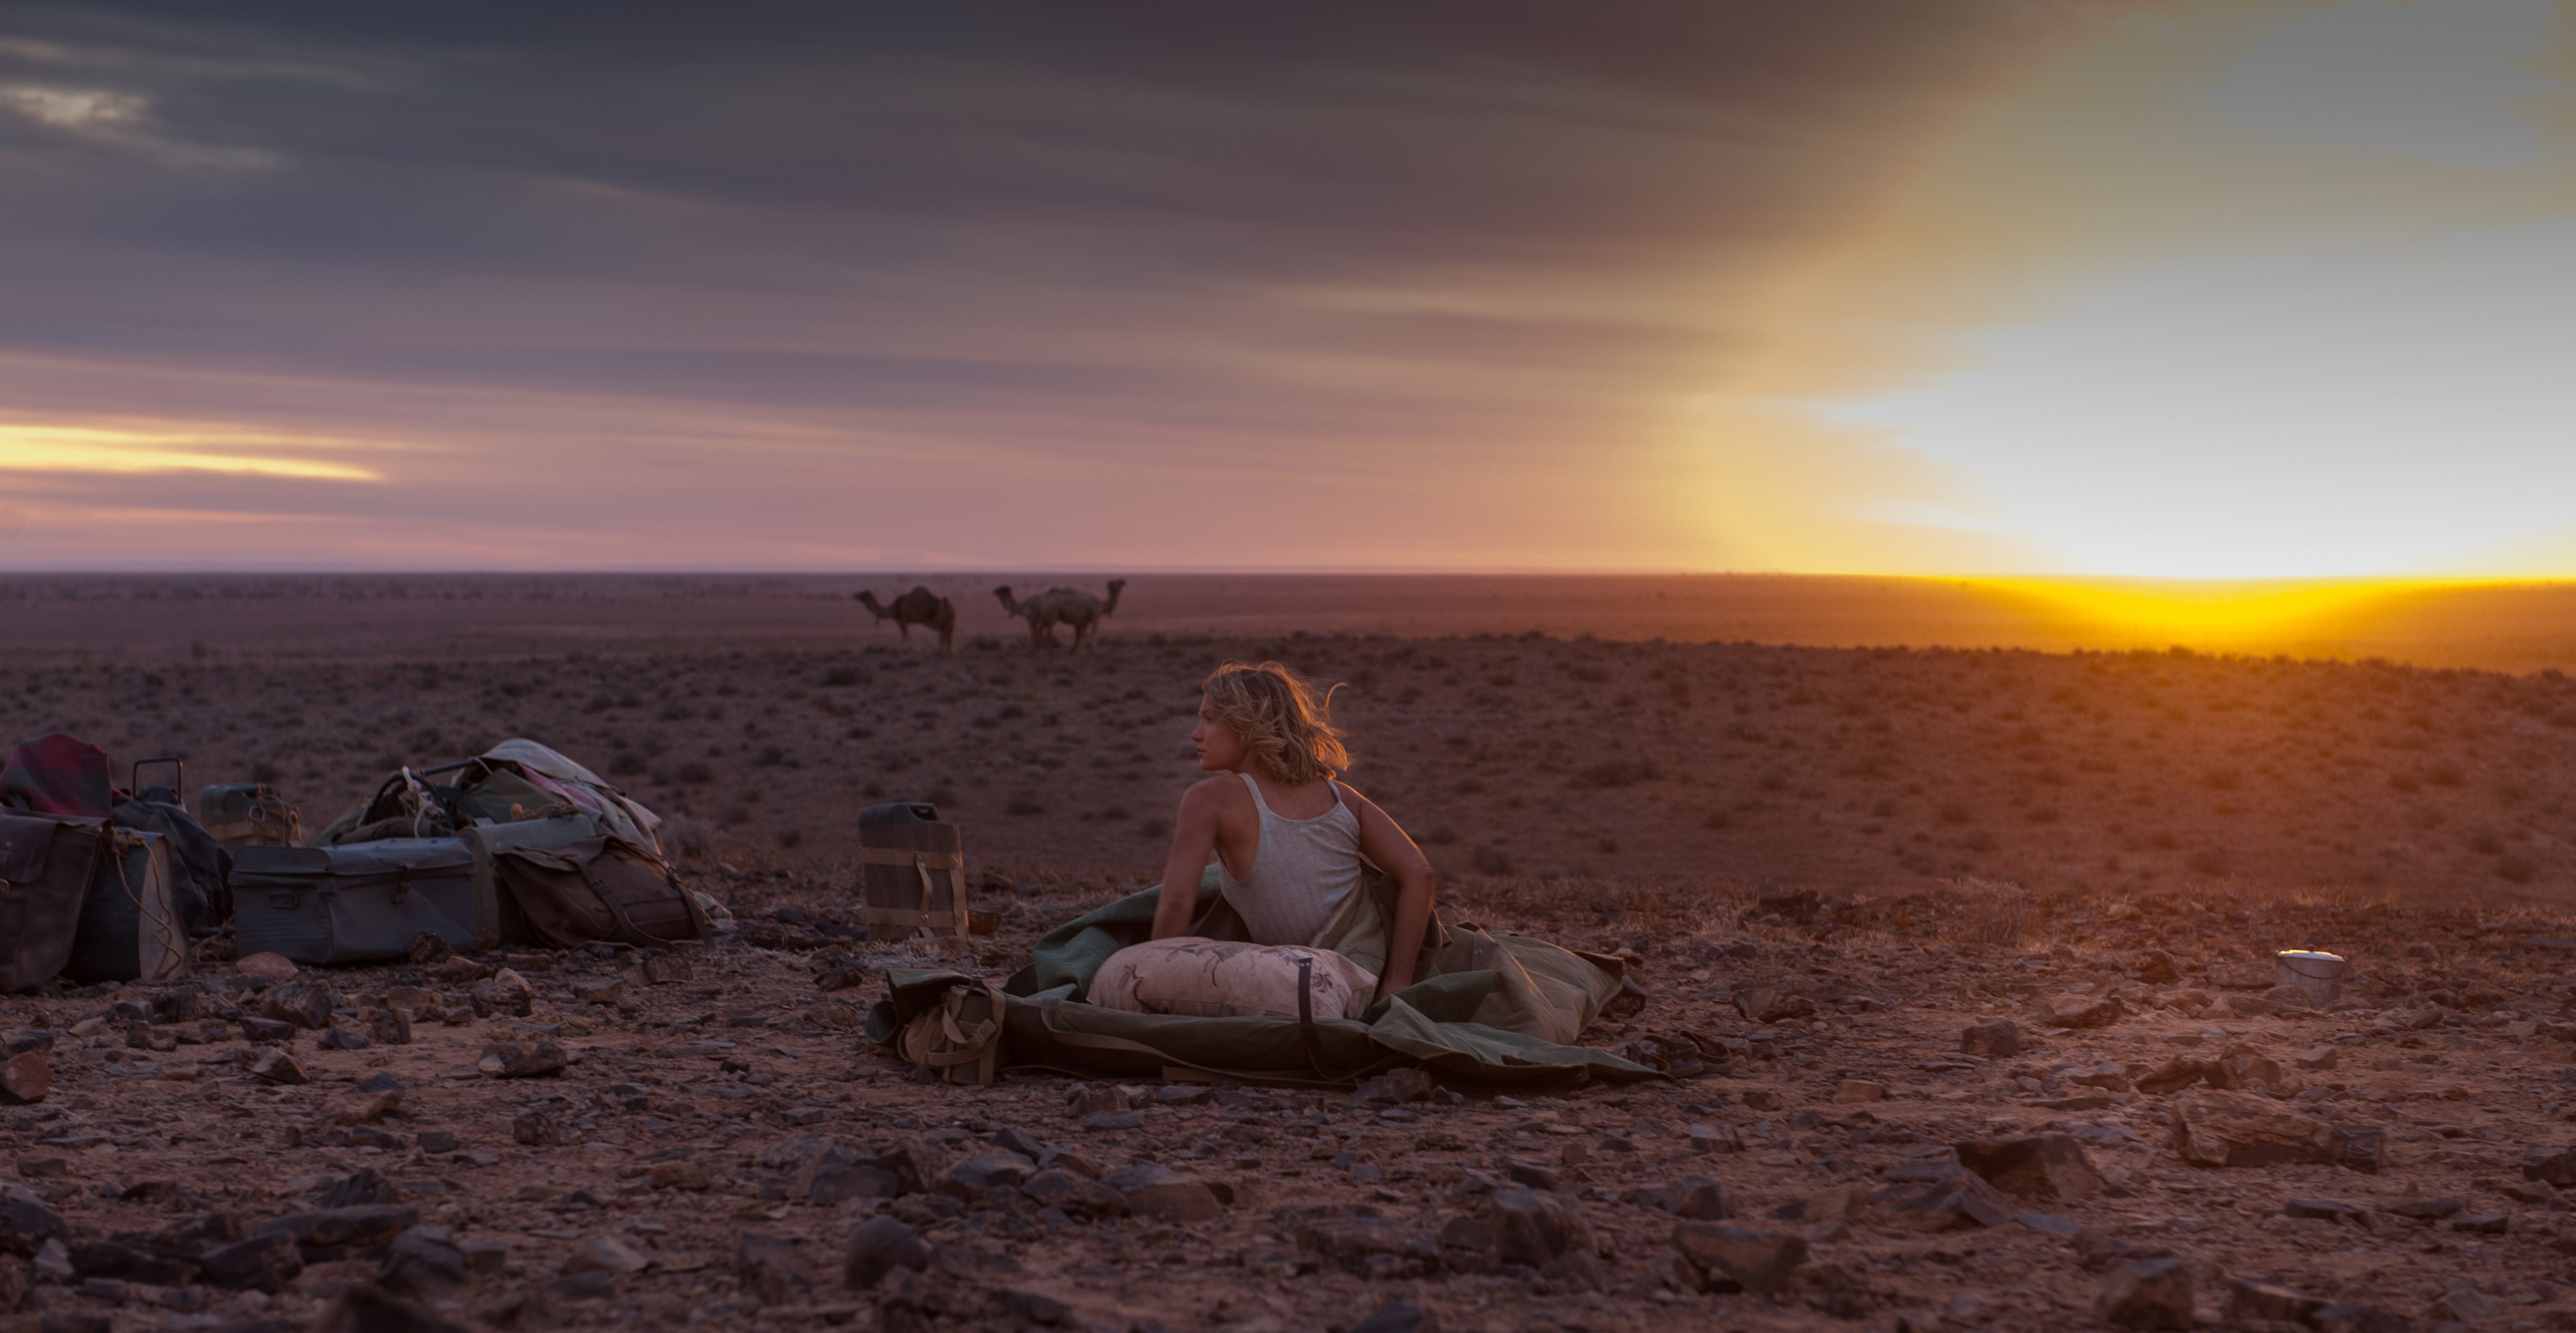 沙漠駝影(澳大利亞2013年約翰·卡蘭執導電影)